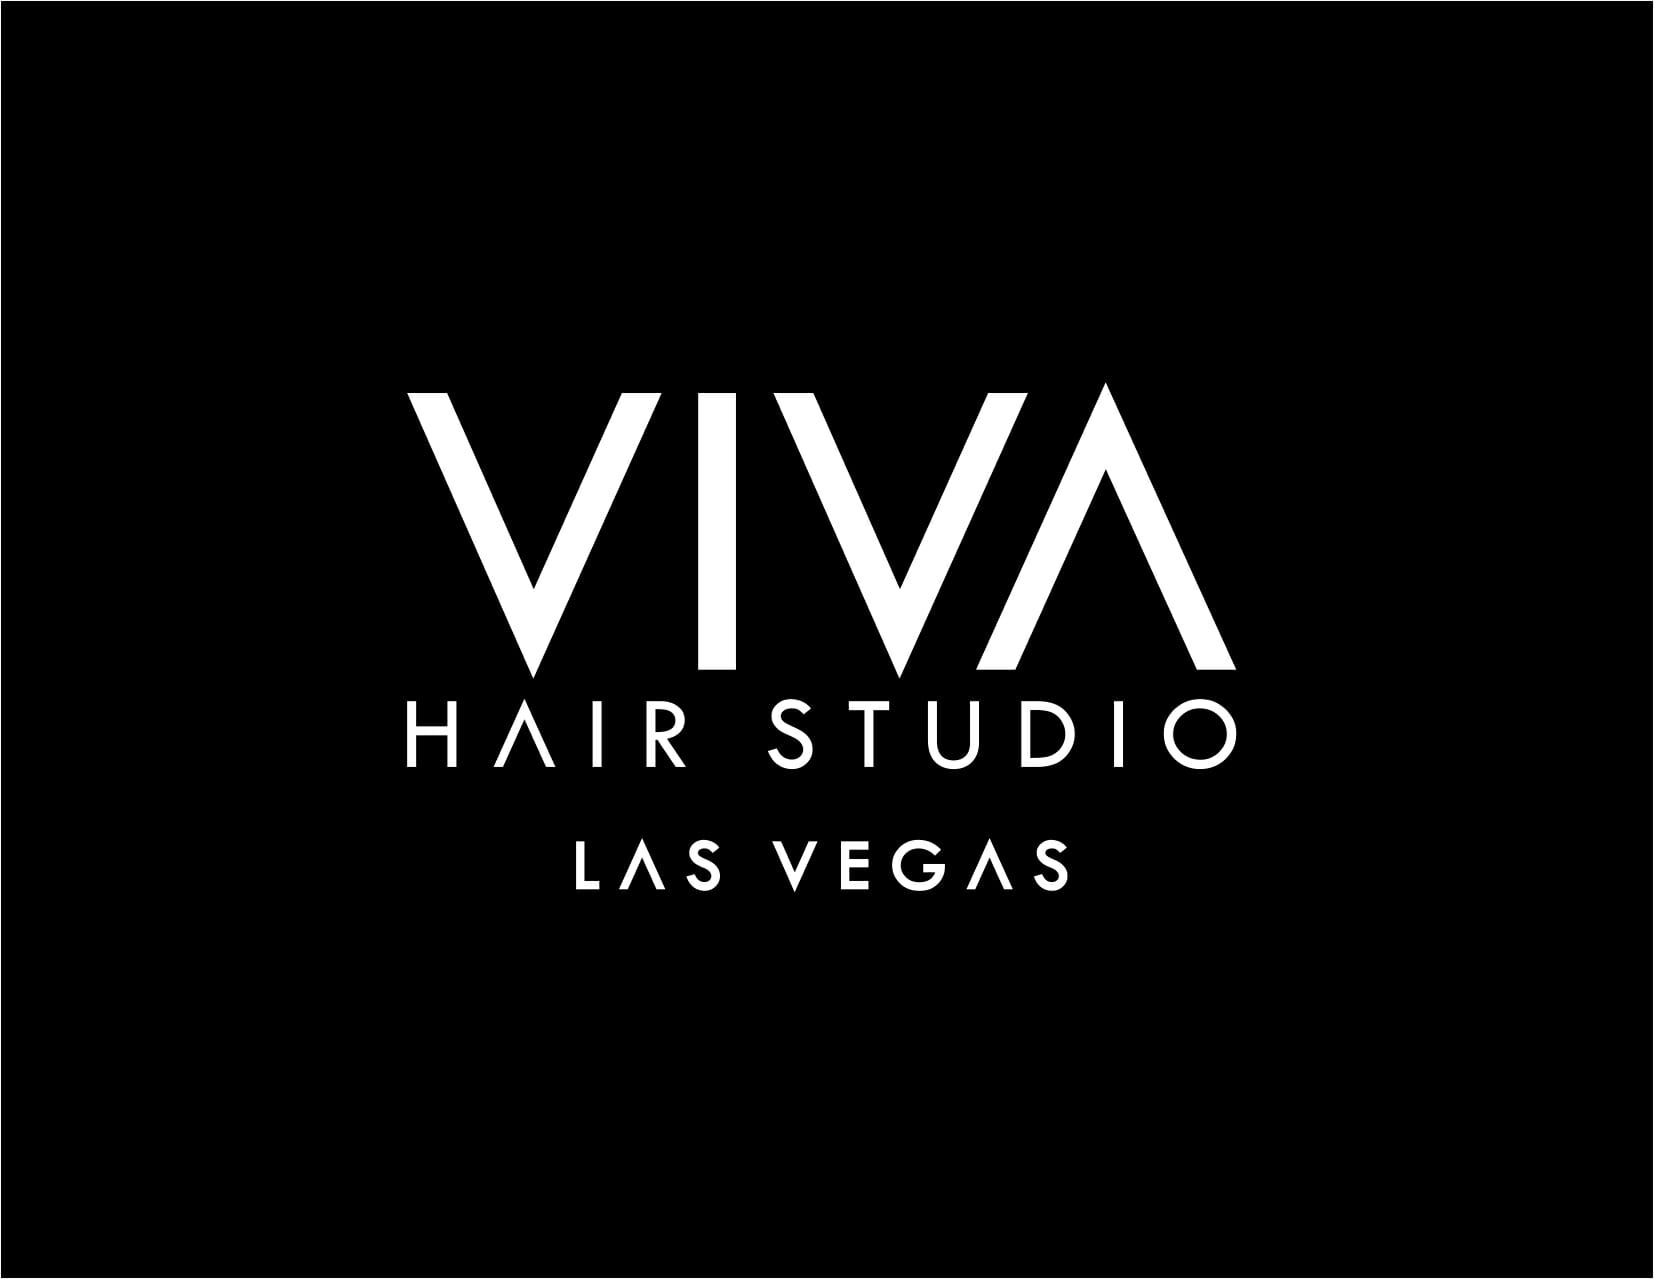 VIVA HAIR STUDIOS LOGO white over black